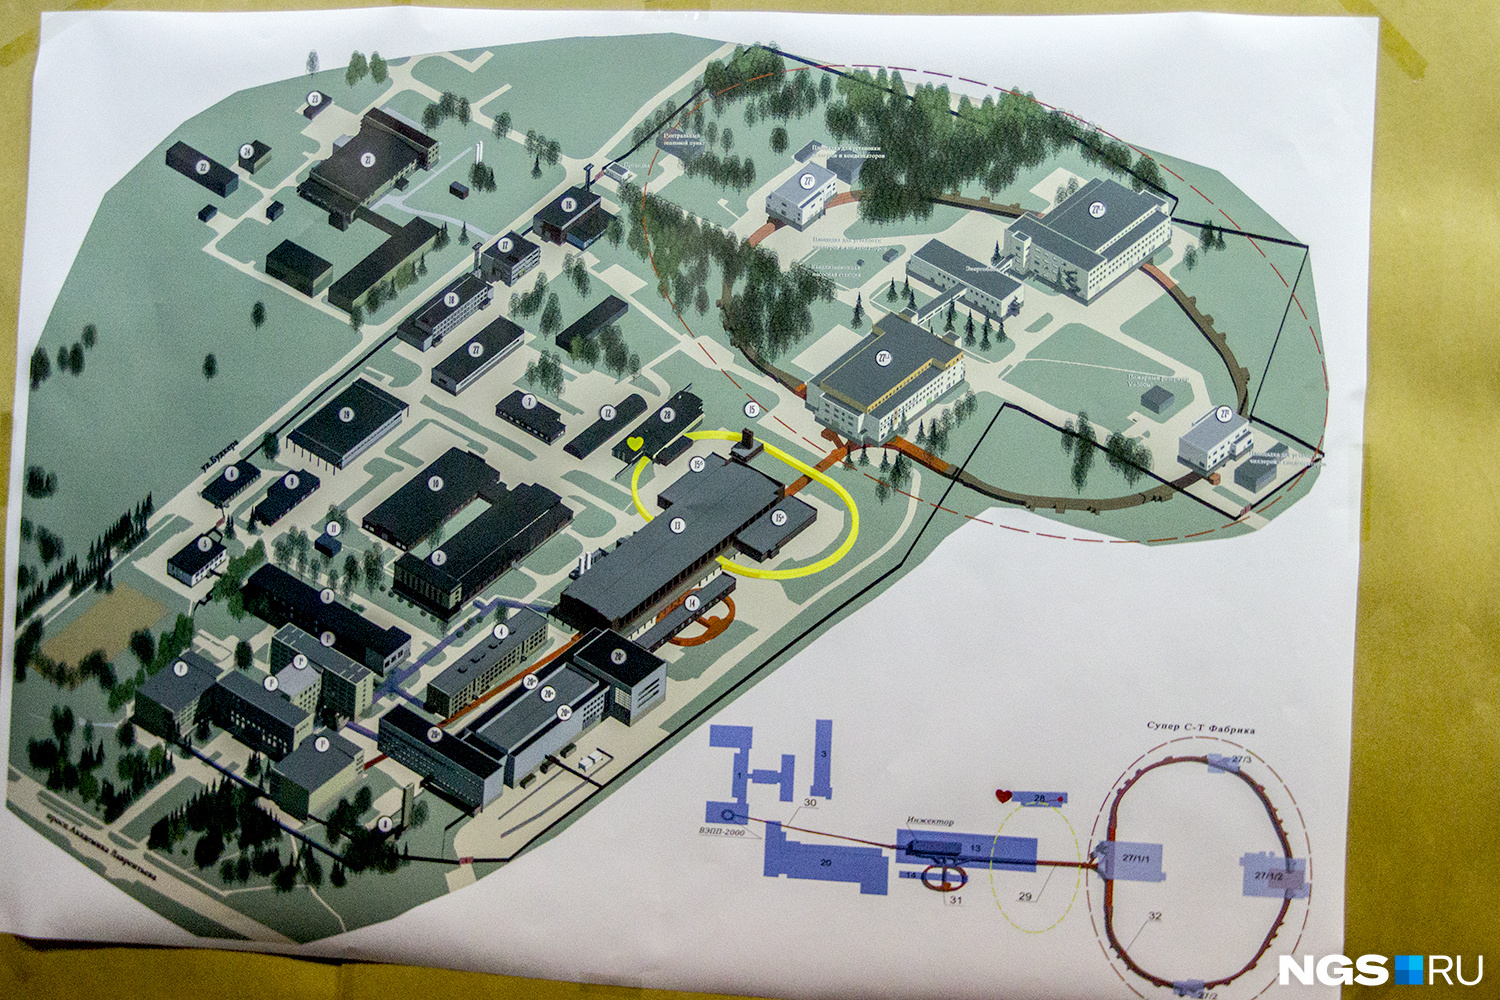 Карта института с предполагаемым проектом «Супер Чарм-Тау фабрика» — самого большого кольца сегодня не существует